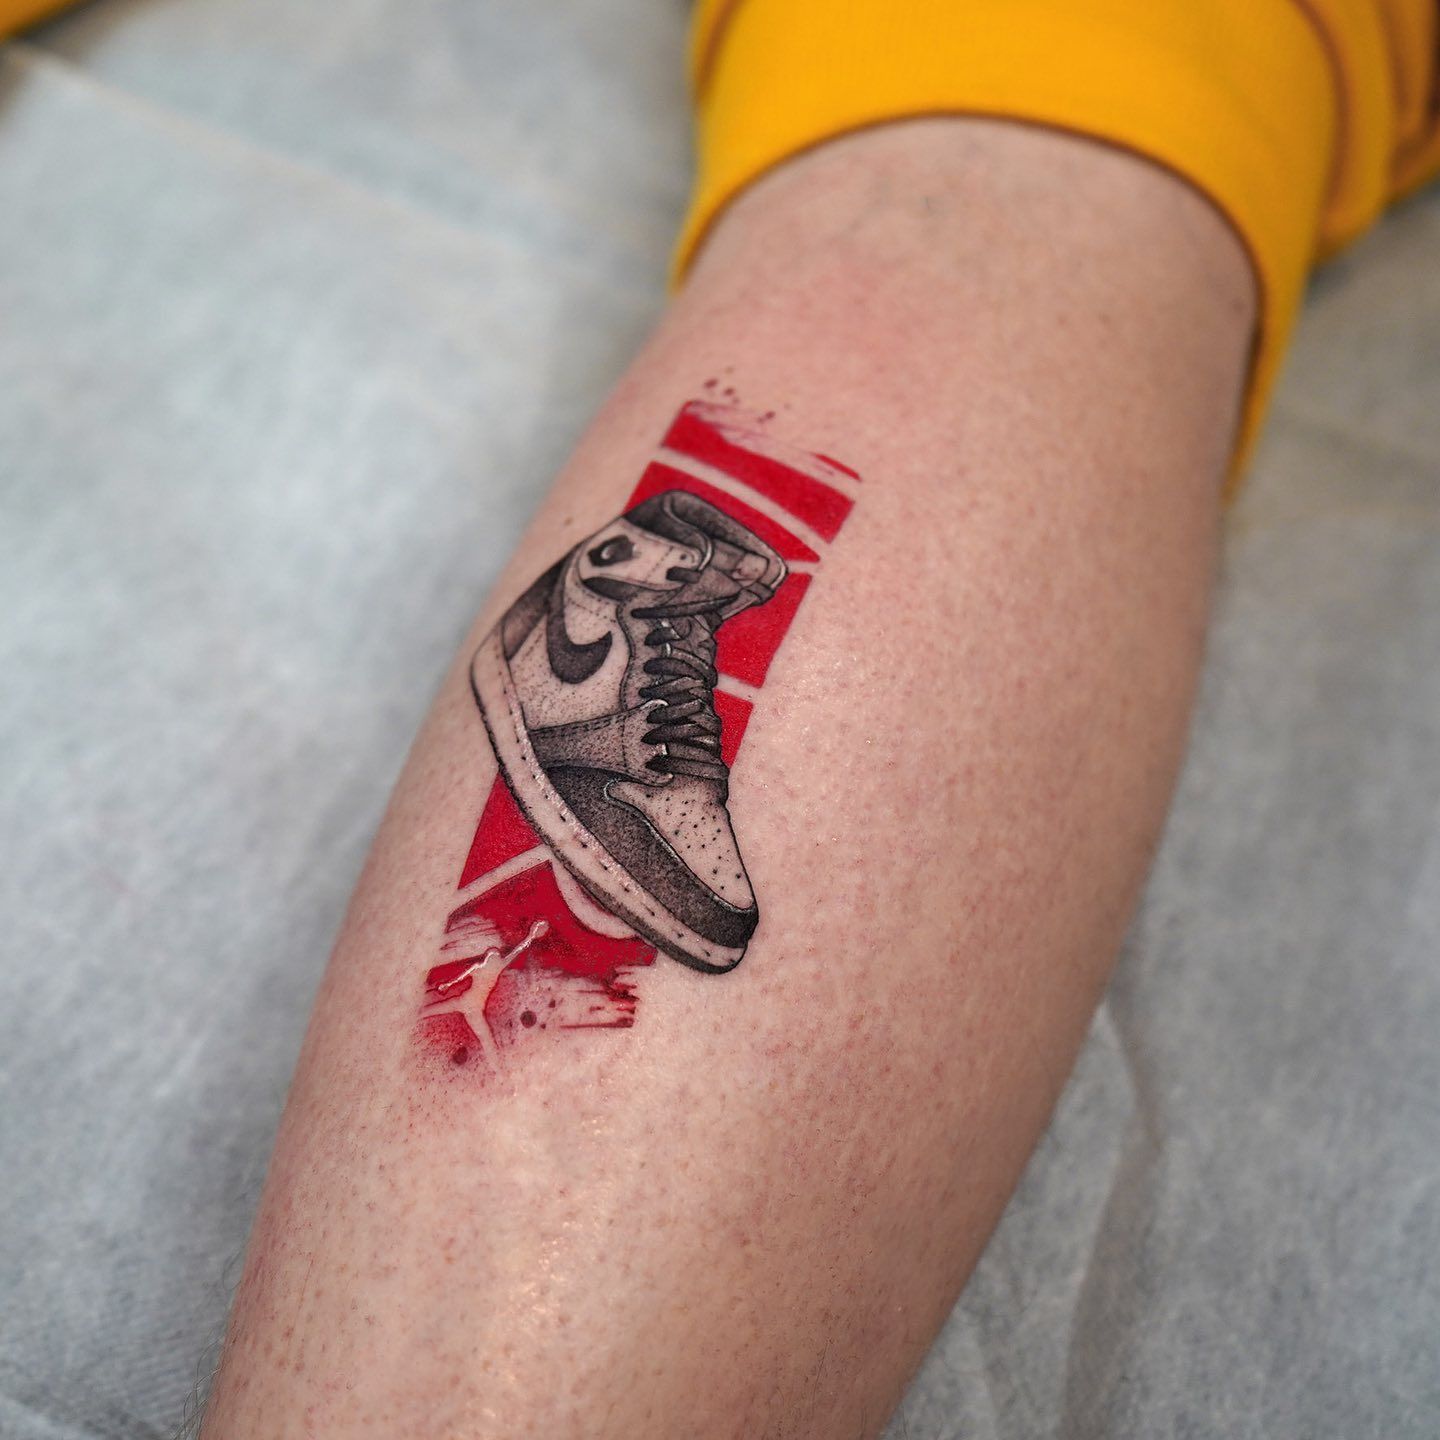 Pin by irlan on desing | Nike tattoo, Nike art, Nike logo wallpapers